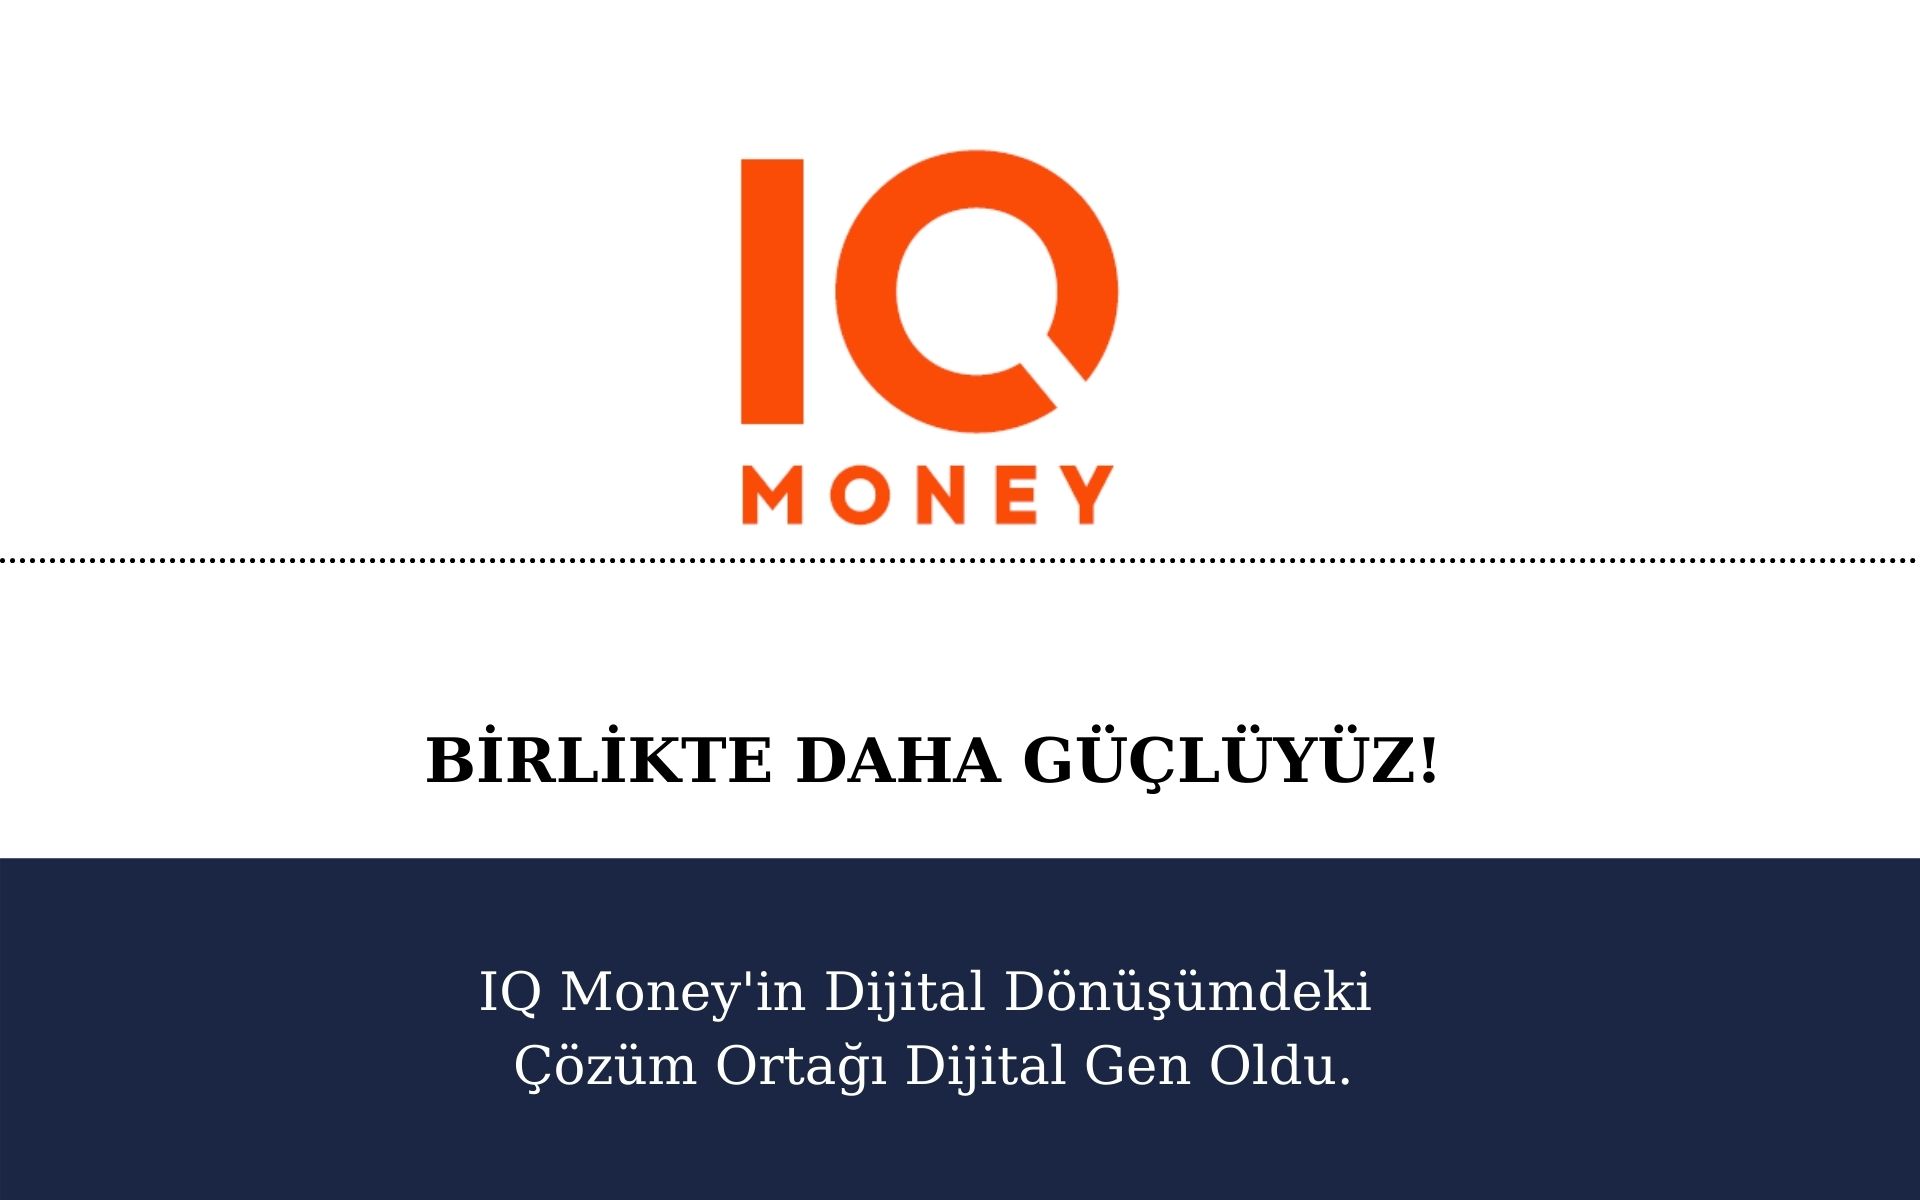 IQ Money’in Dijital Dönüşümdeki Çözüm Ortağı Dijital Gen Oldu.